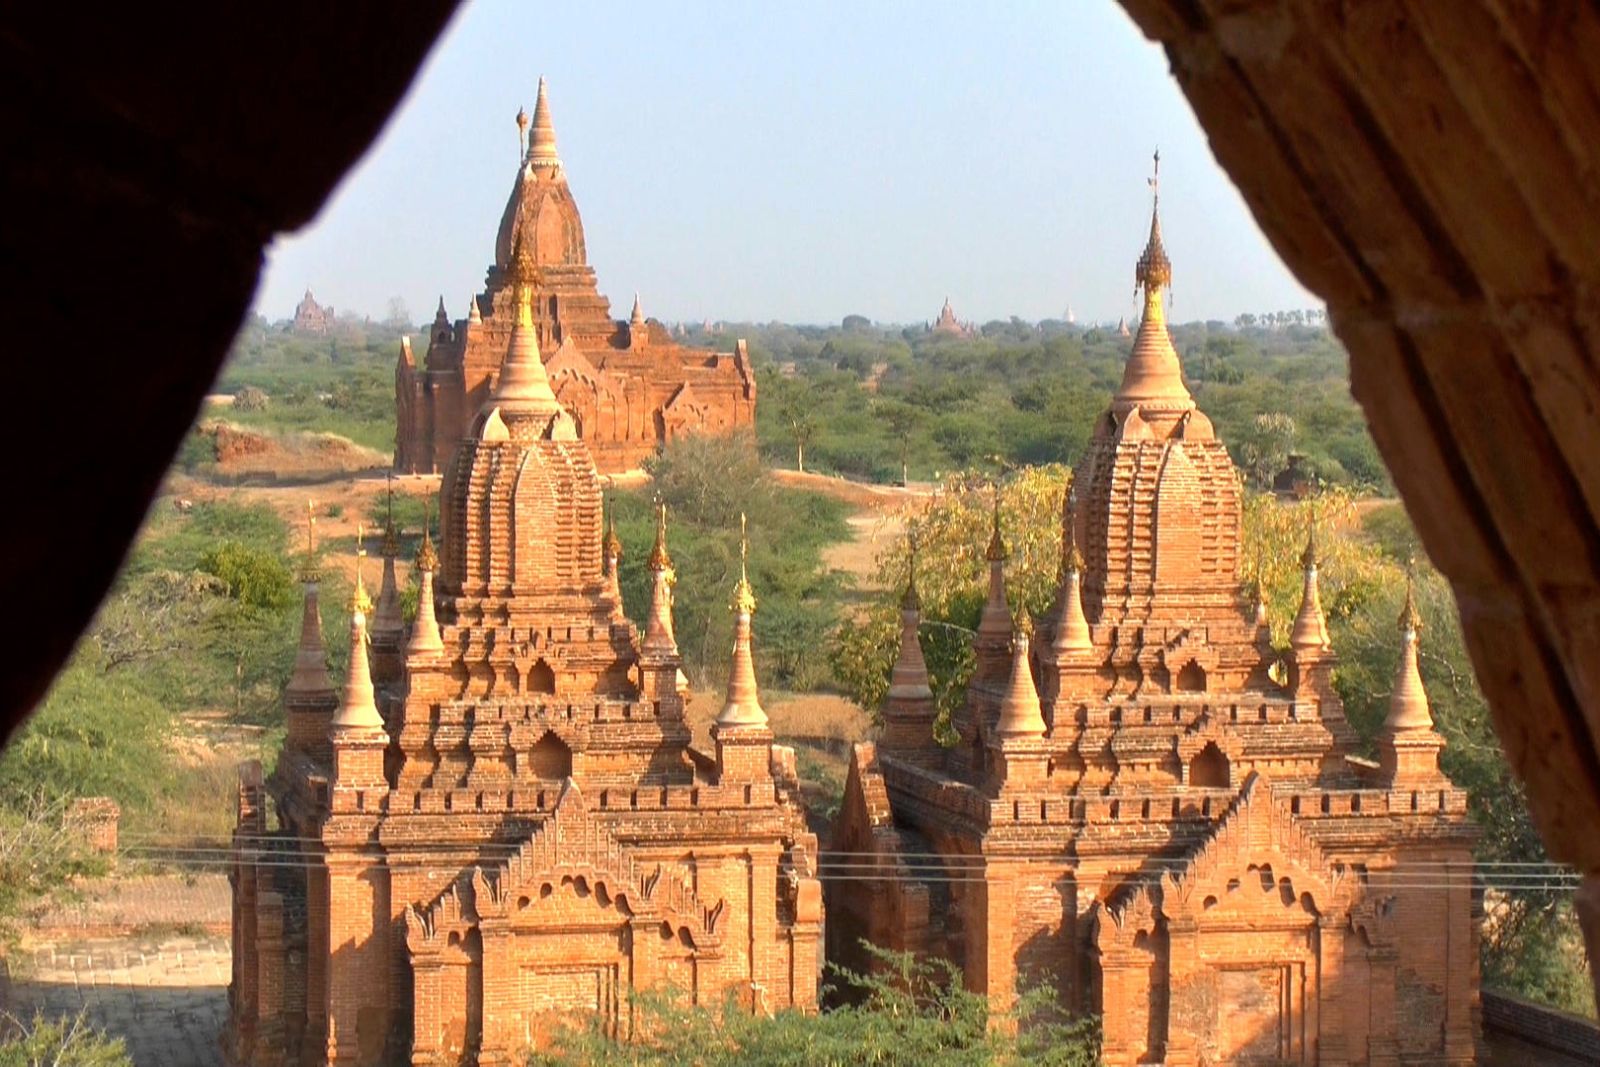 Die unverputzten Ziegelmauerwerke von Bagan sehen teilweise schöner aus, als die Weissgetünchten oder Vergoldeten.